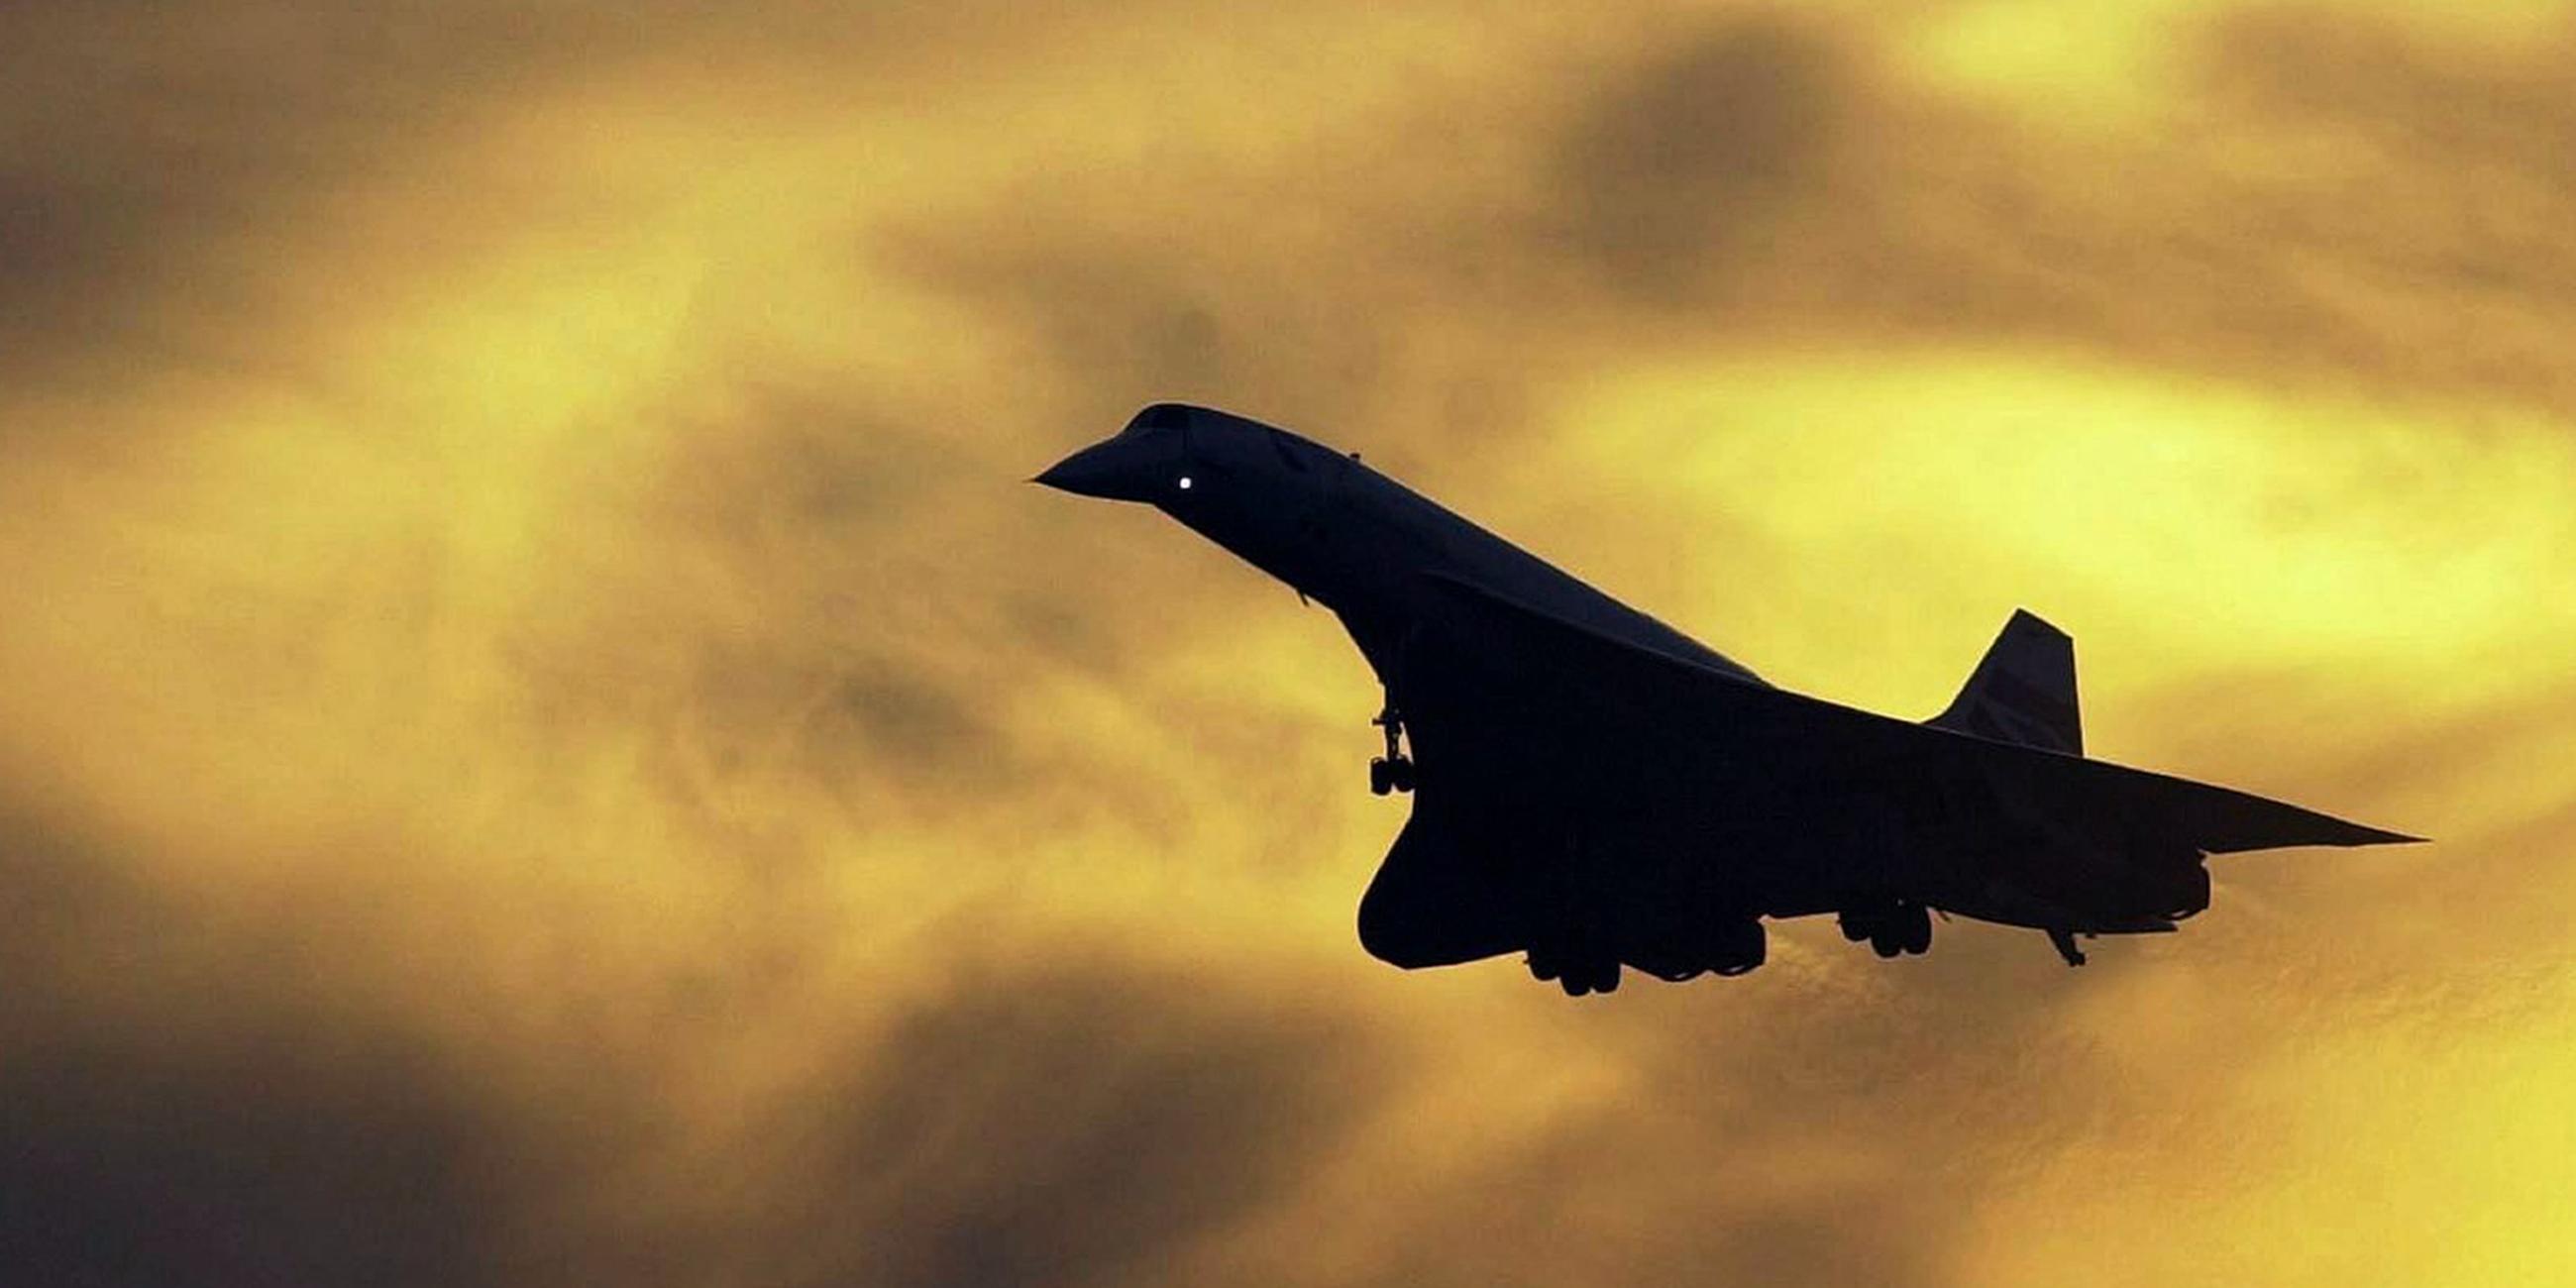 Archiv: Das Überschallflugzeug Concorde landet am 18.10.2003 auf dem Flughafen Heathrow in London